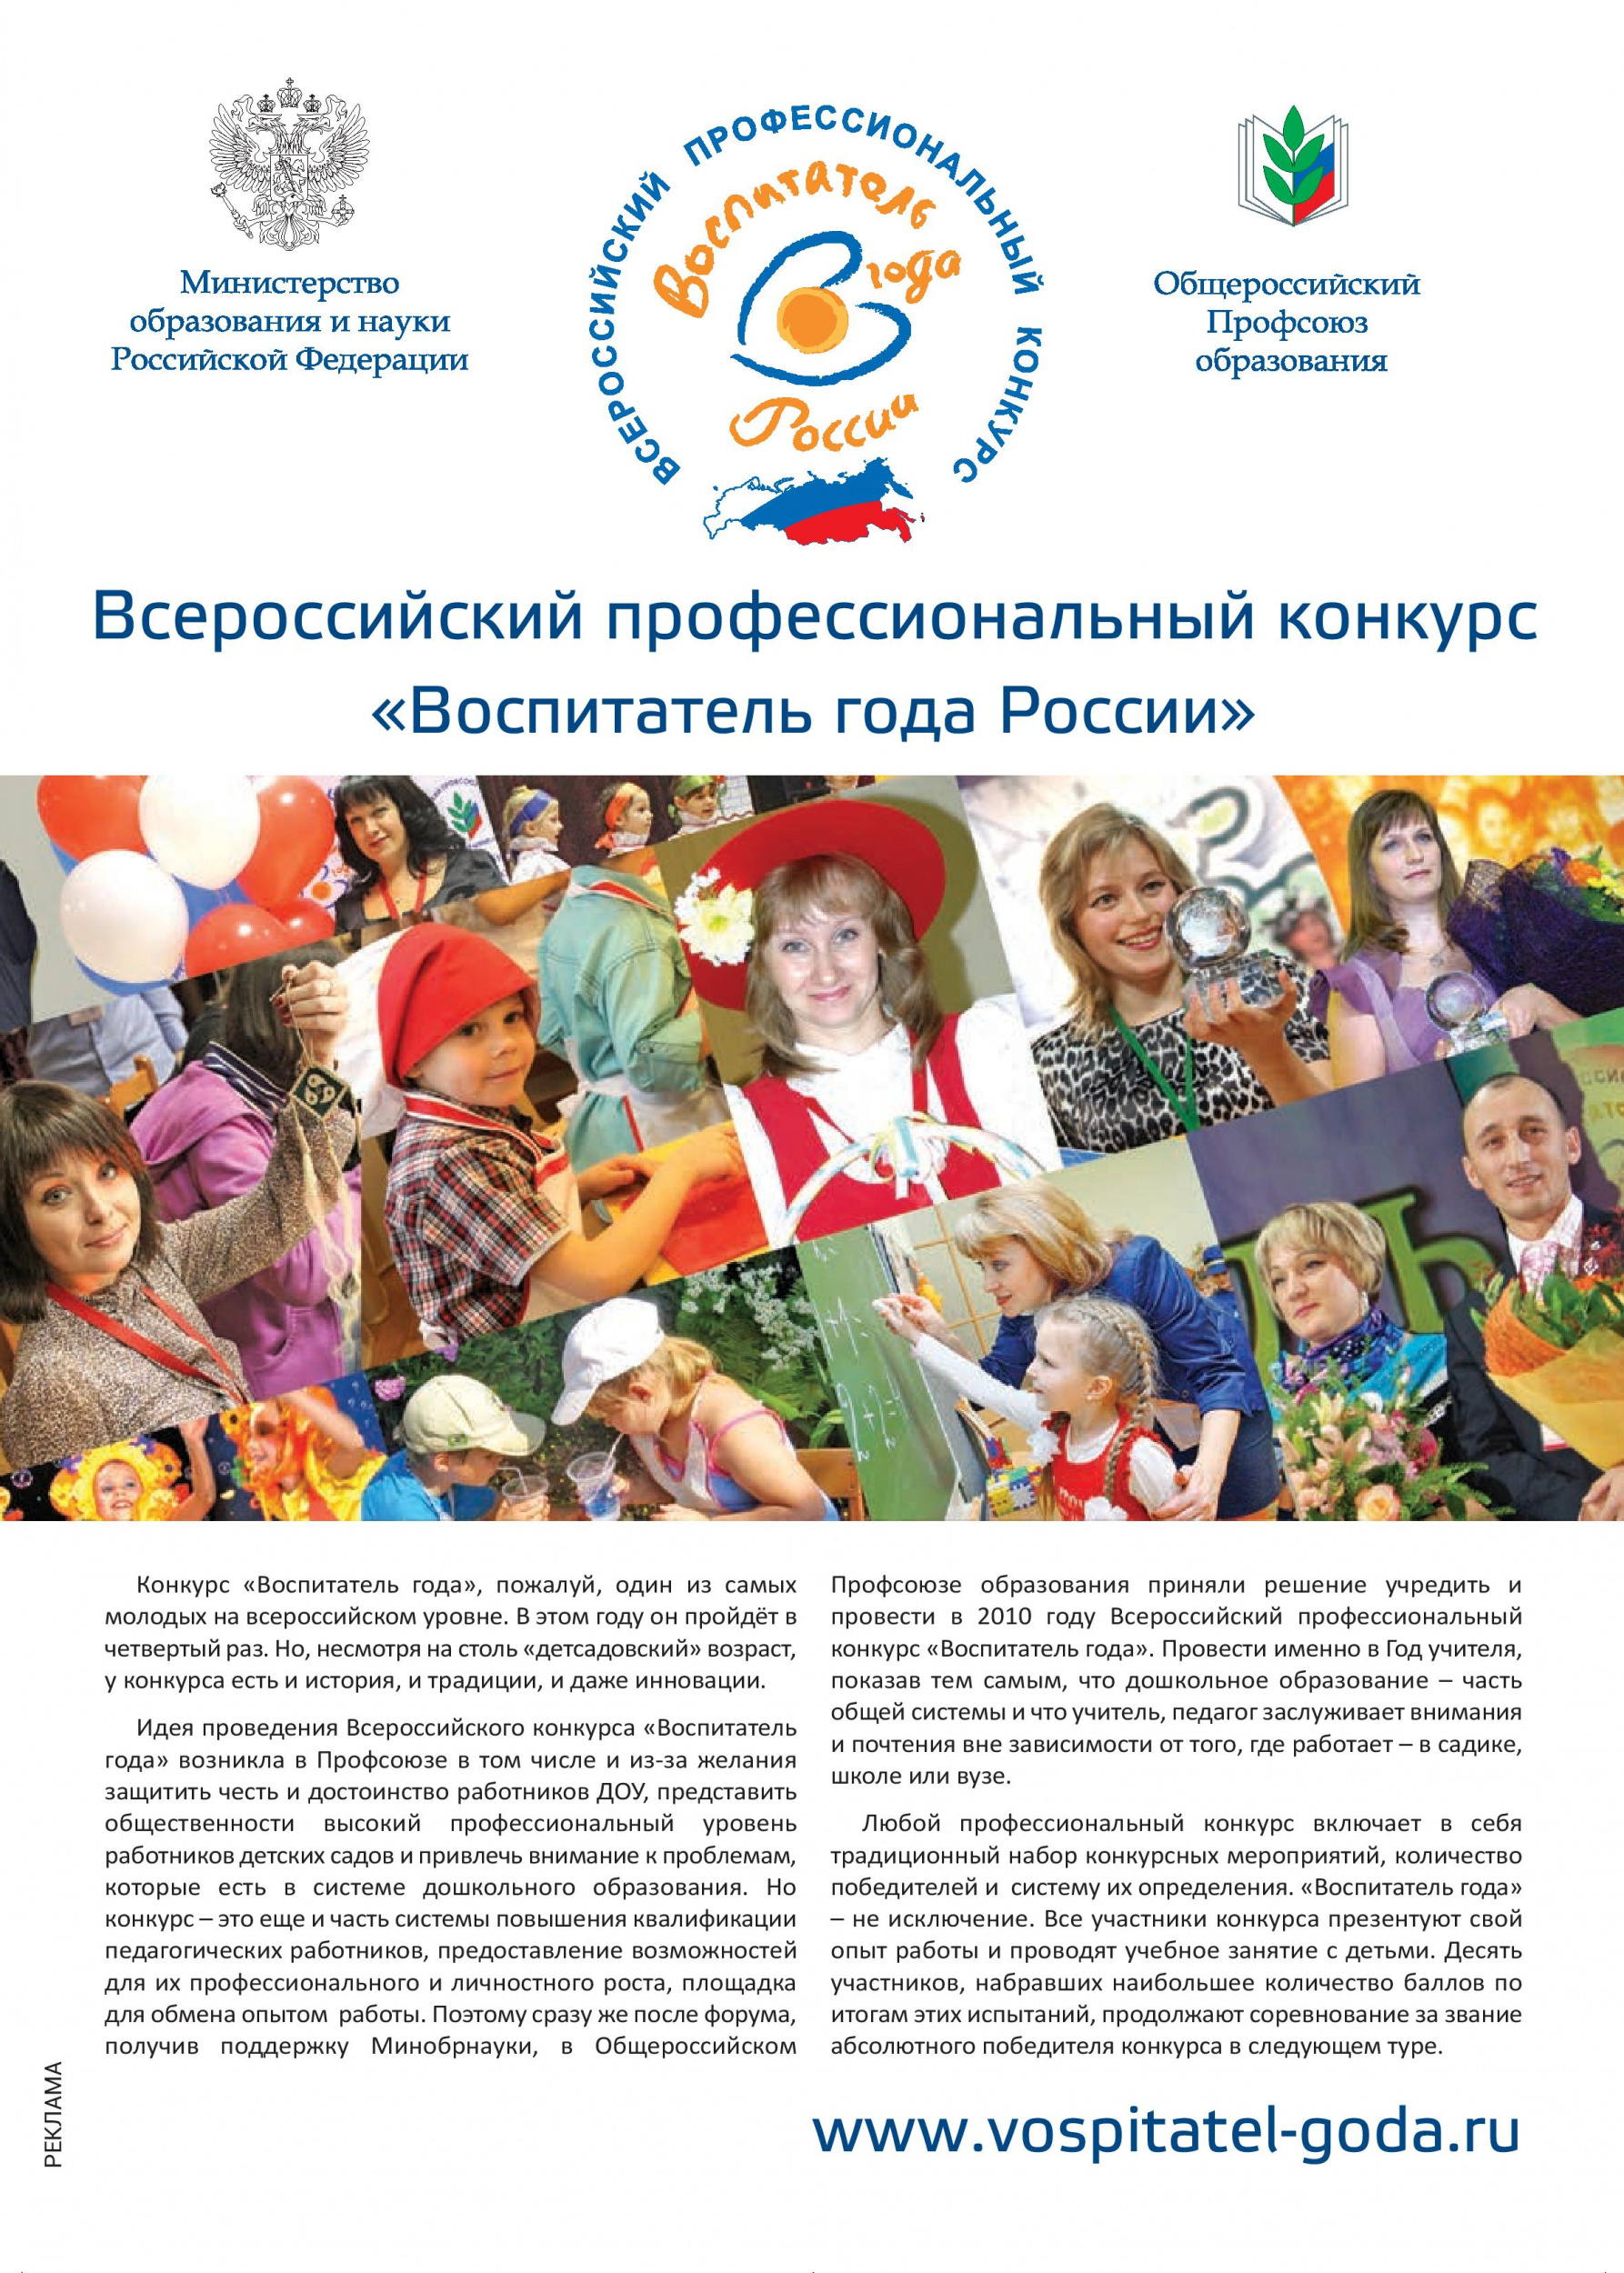 Всероссийский профессиональный конкурс «Воспитатель года России»